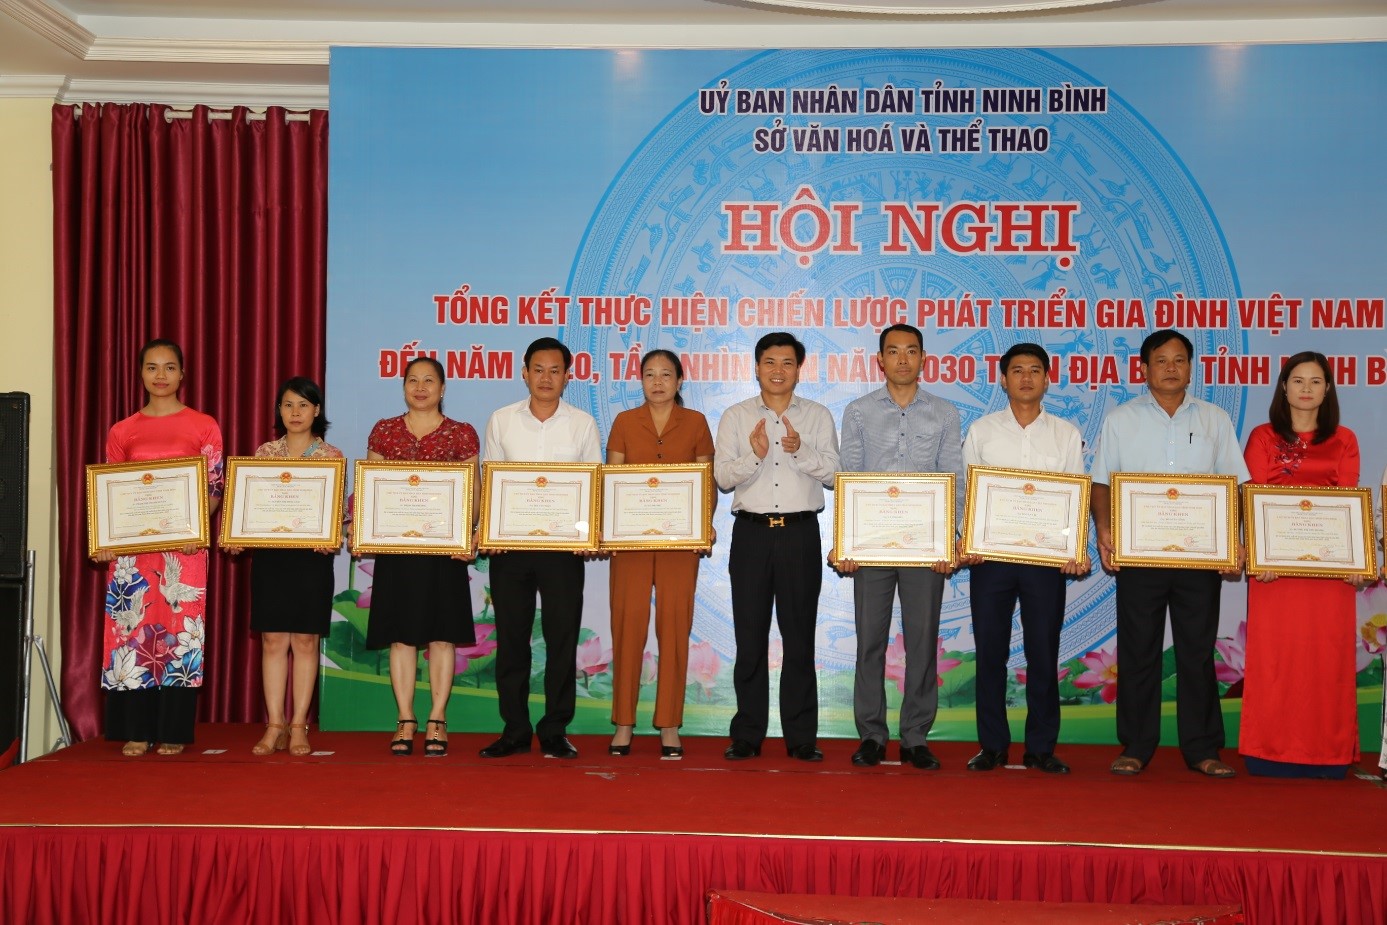 Ninh Bình tổ chức Hội nghị Tổng kết thực hiện chiến lược phát triển gia đình Việt Nam đến năm 2020, tầm nhìn đến năm 2030 trên địa bàn tỉnh